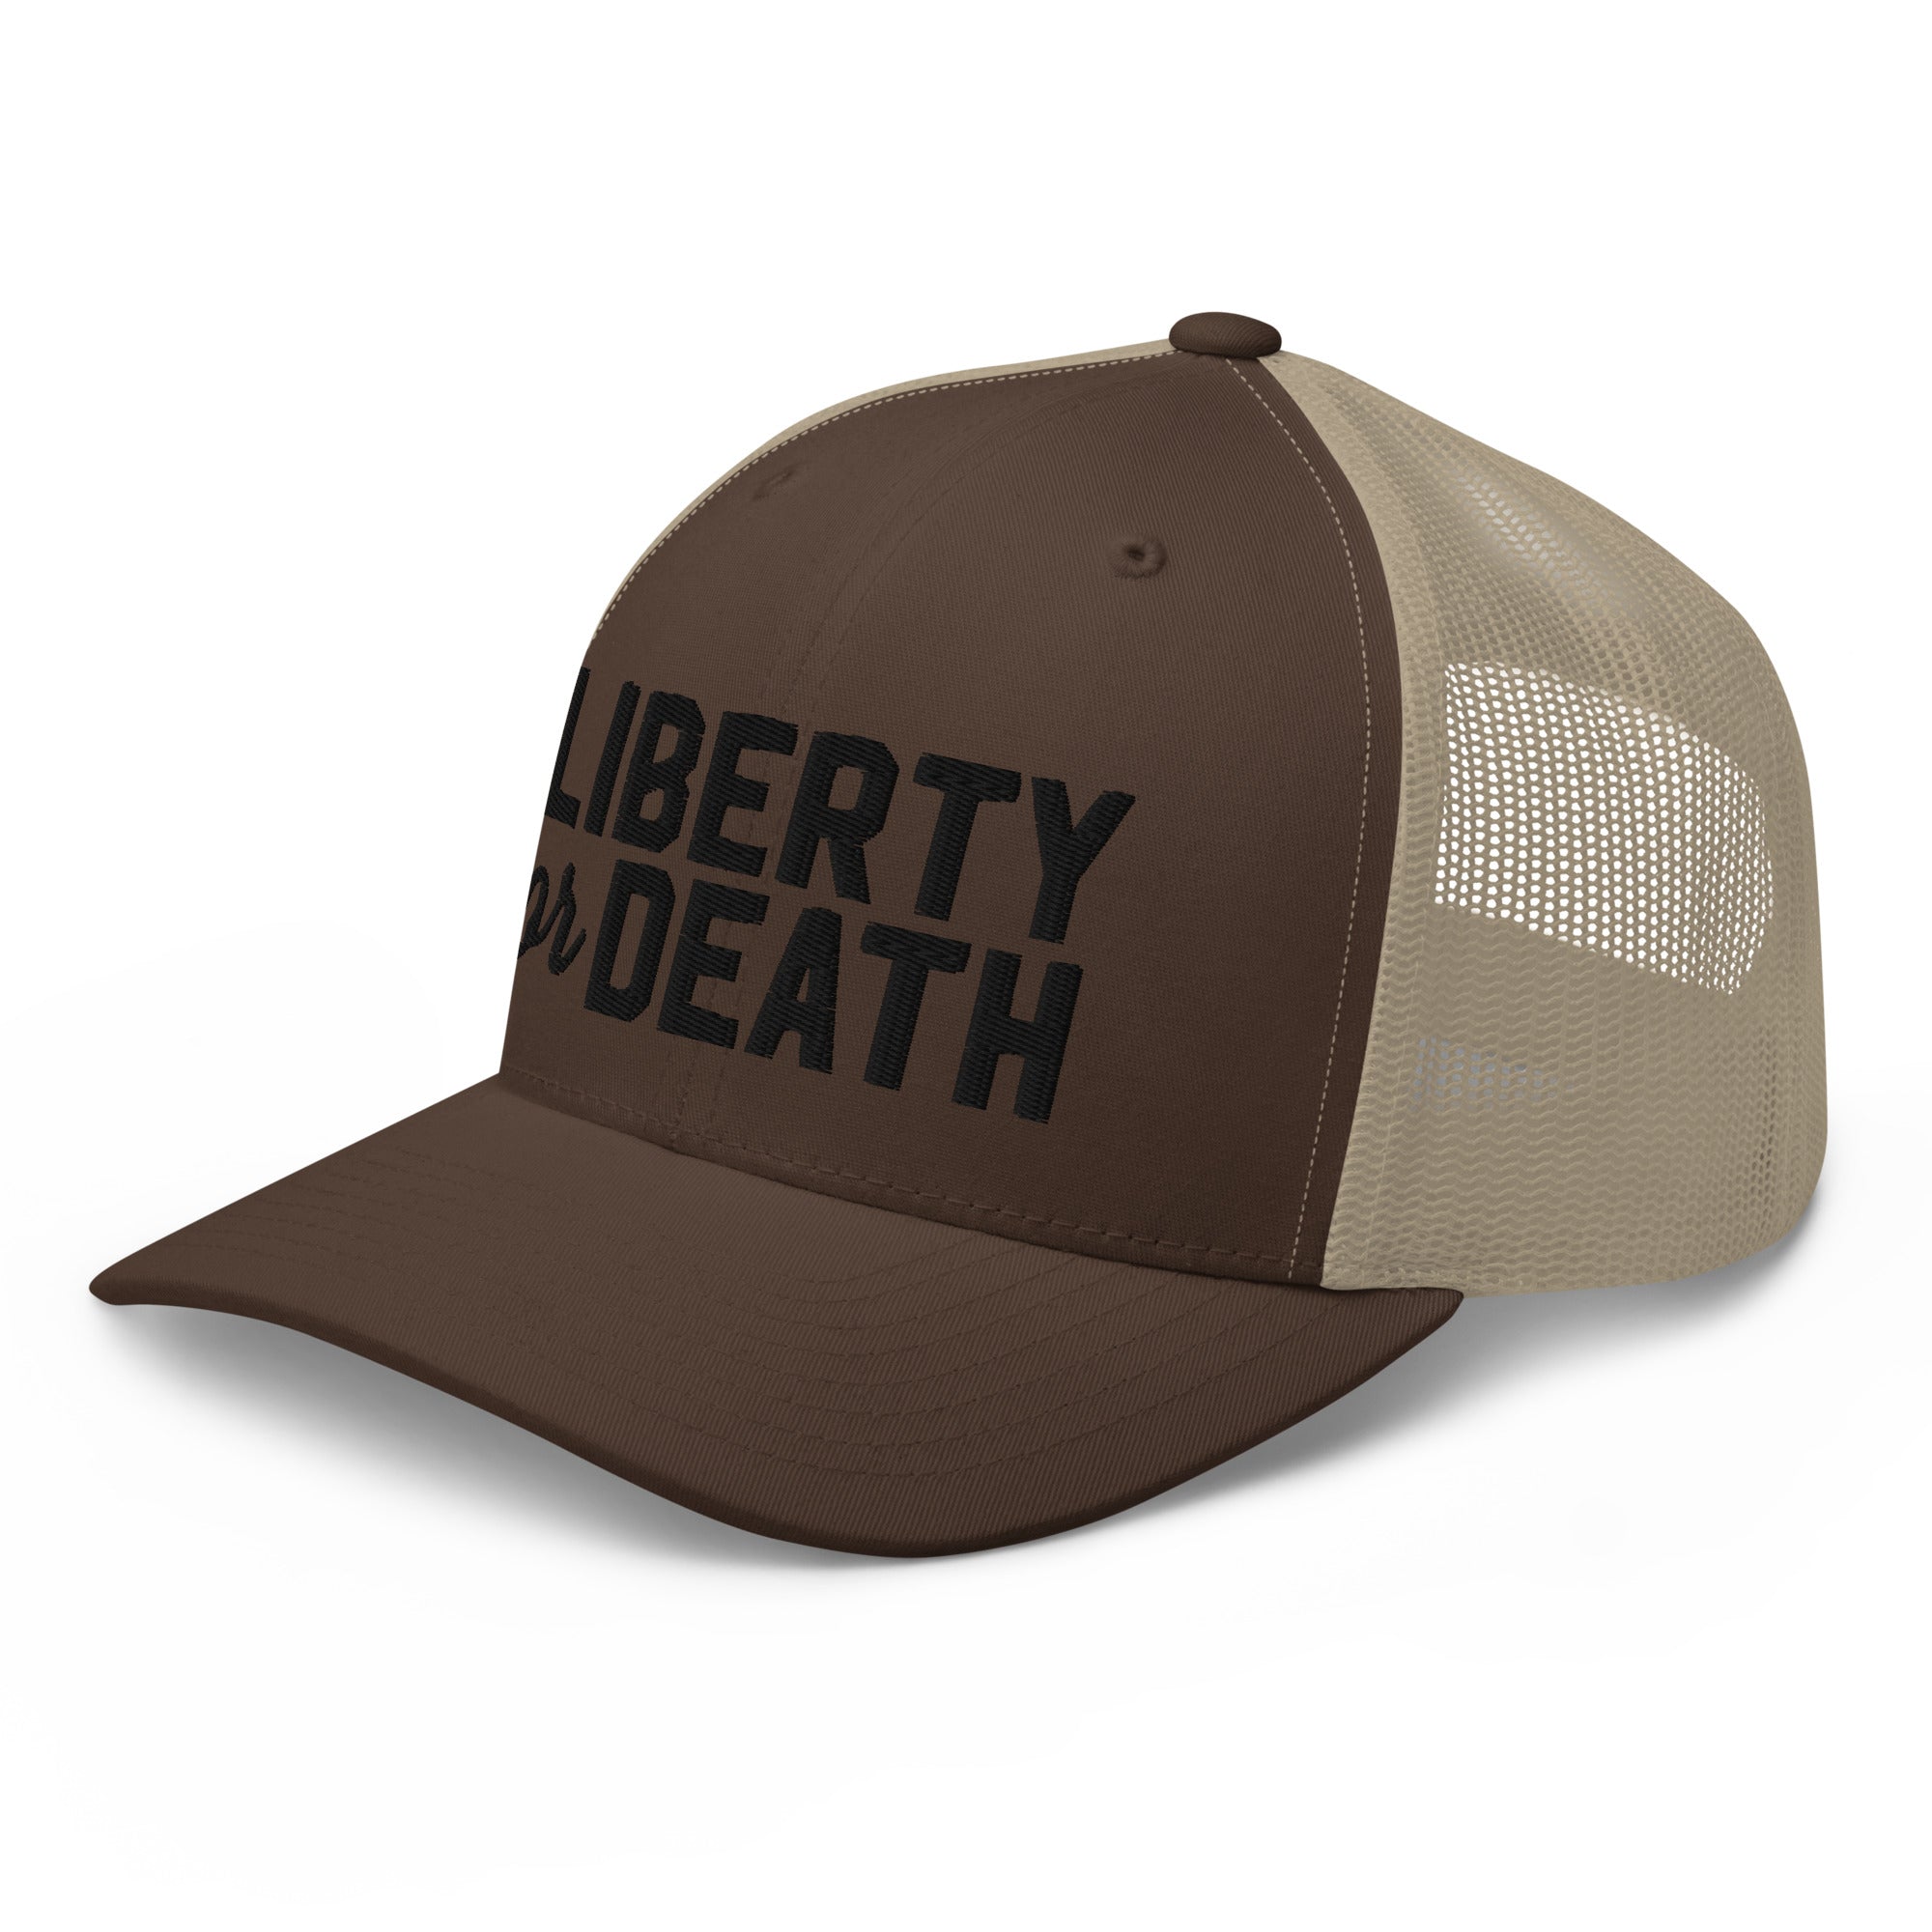 Liberty or Death Trucker Cap